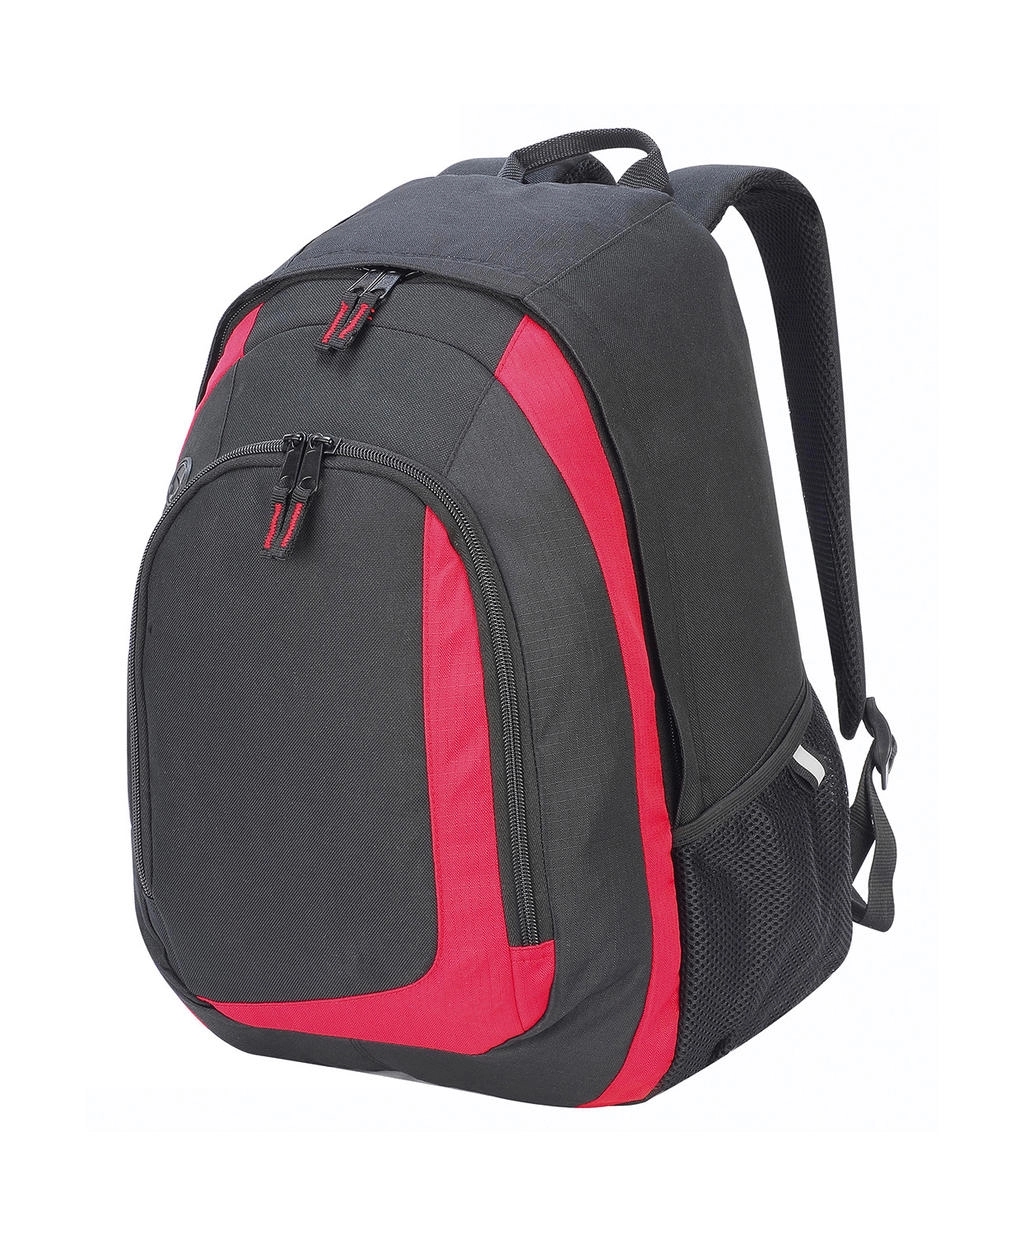 Geneva Backpack zum Besticken und Bedrucken in der Farbe Black/Red mit Ihren Logo, Schriftzug oder Motiv.